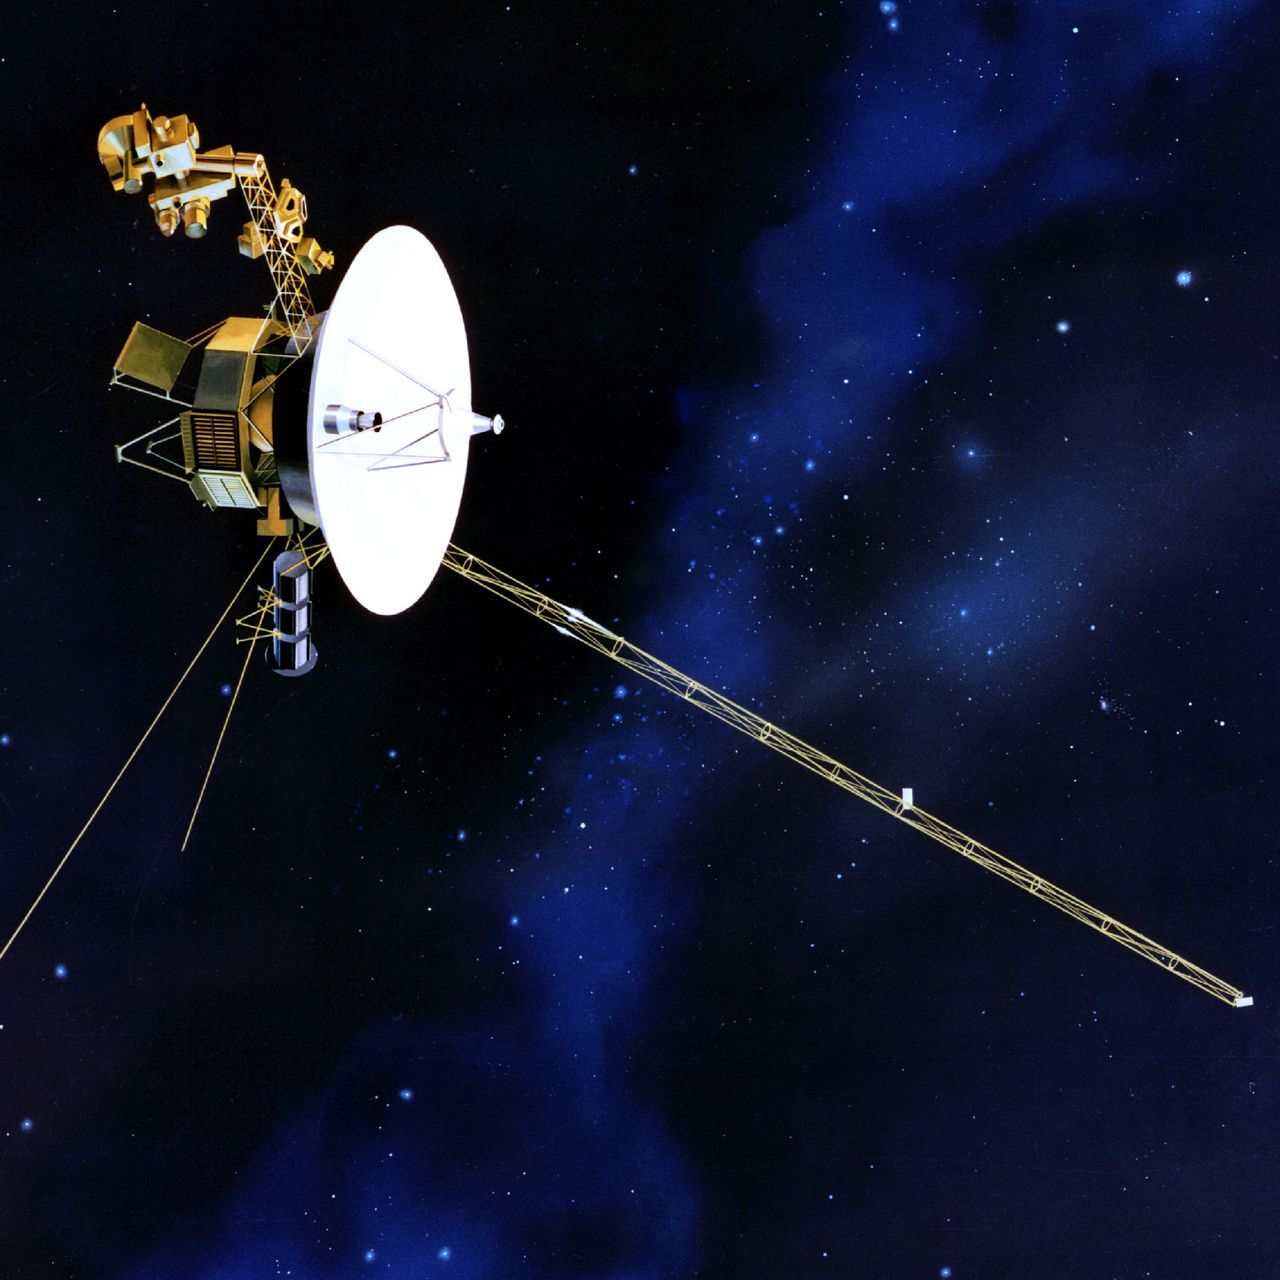 La sonda spaziale Voyager in missione di ricerca dal 1977 per la NASA